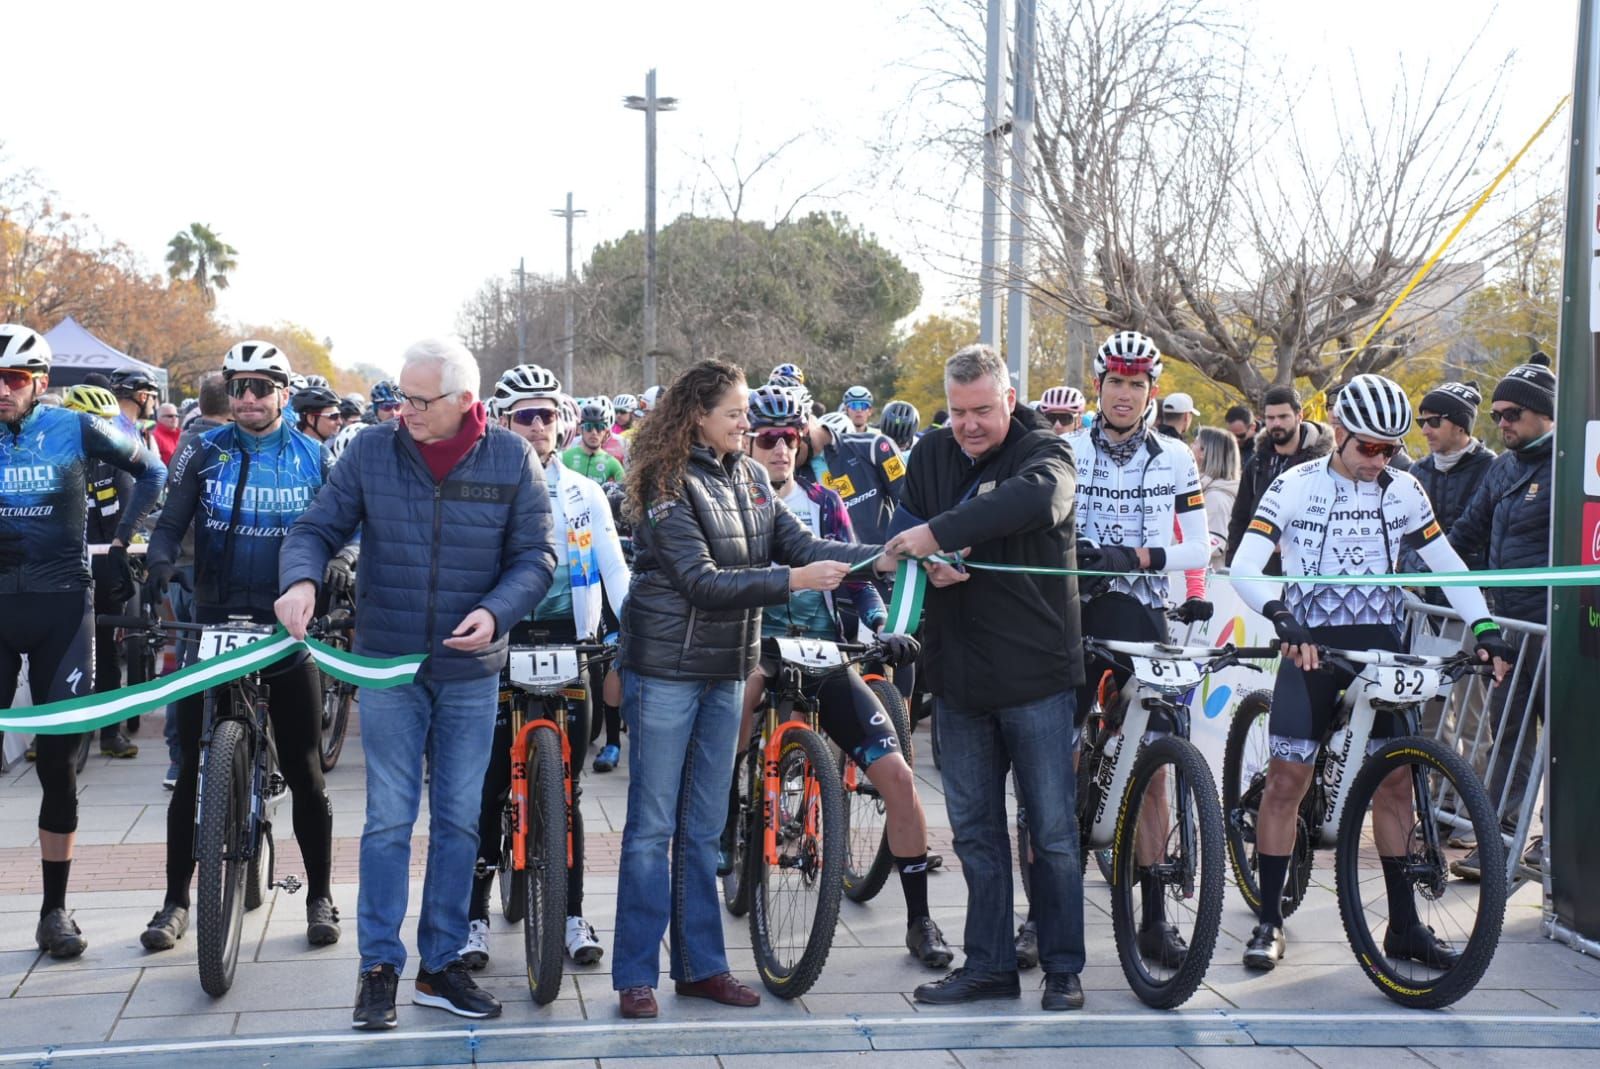 La última etapa de la Andalucía Bike Race, en imágenes